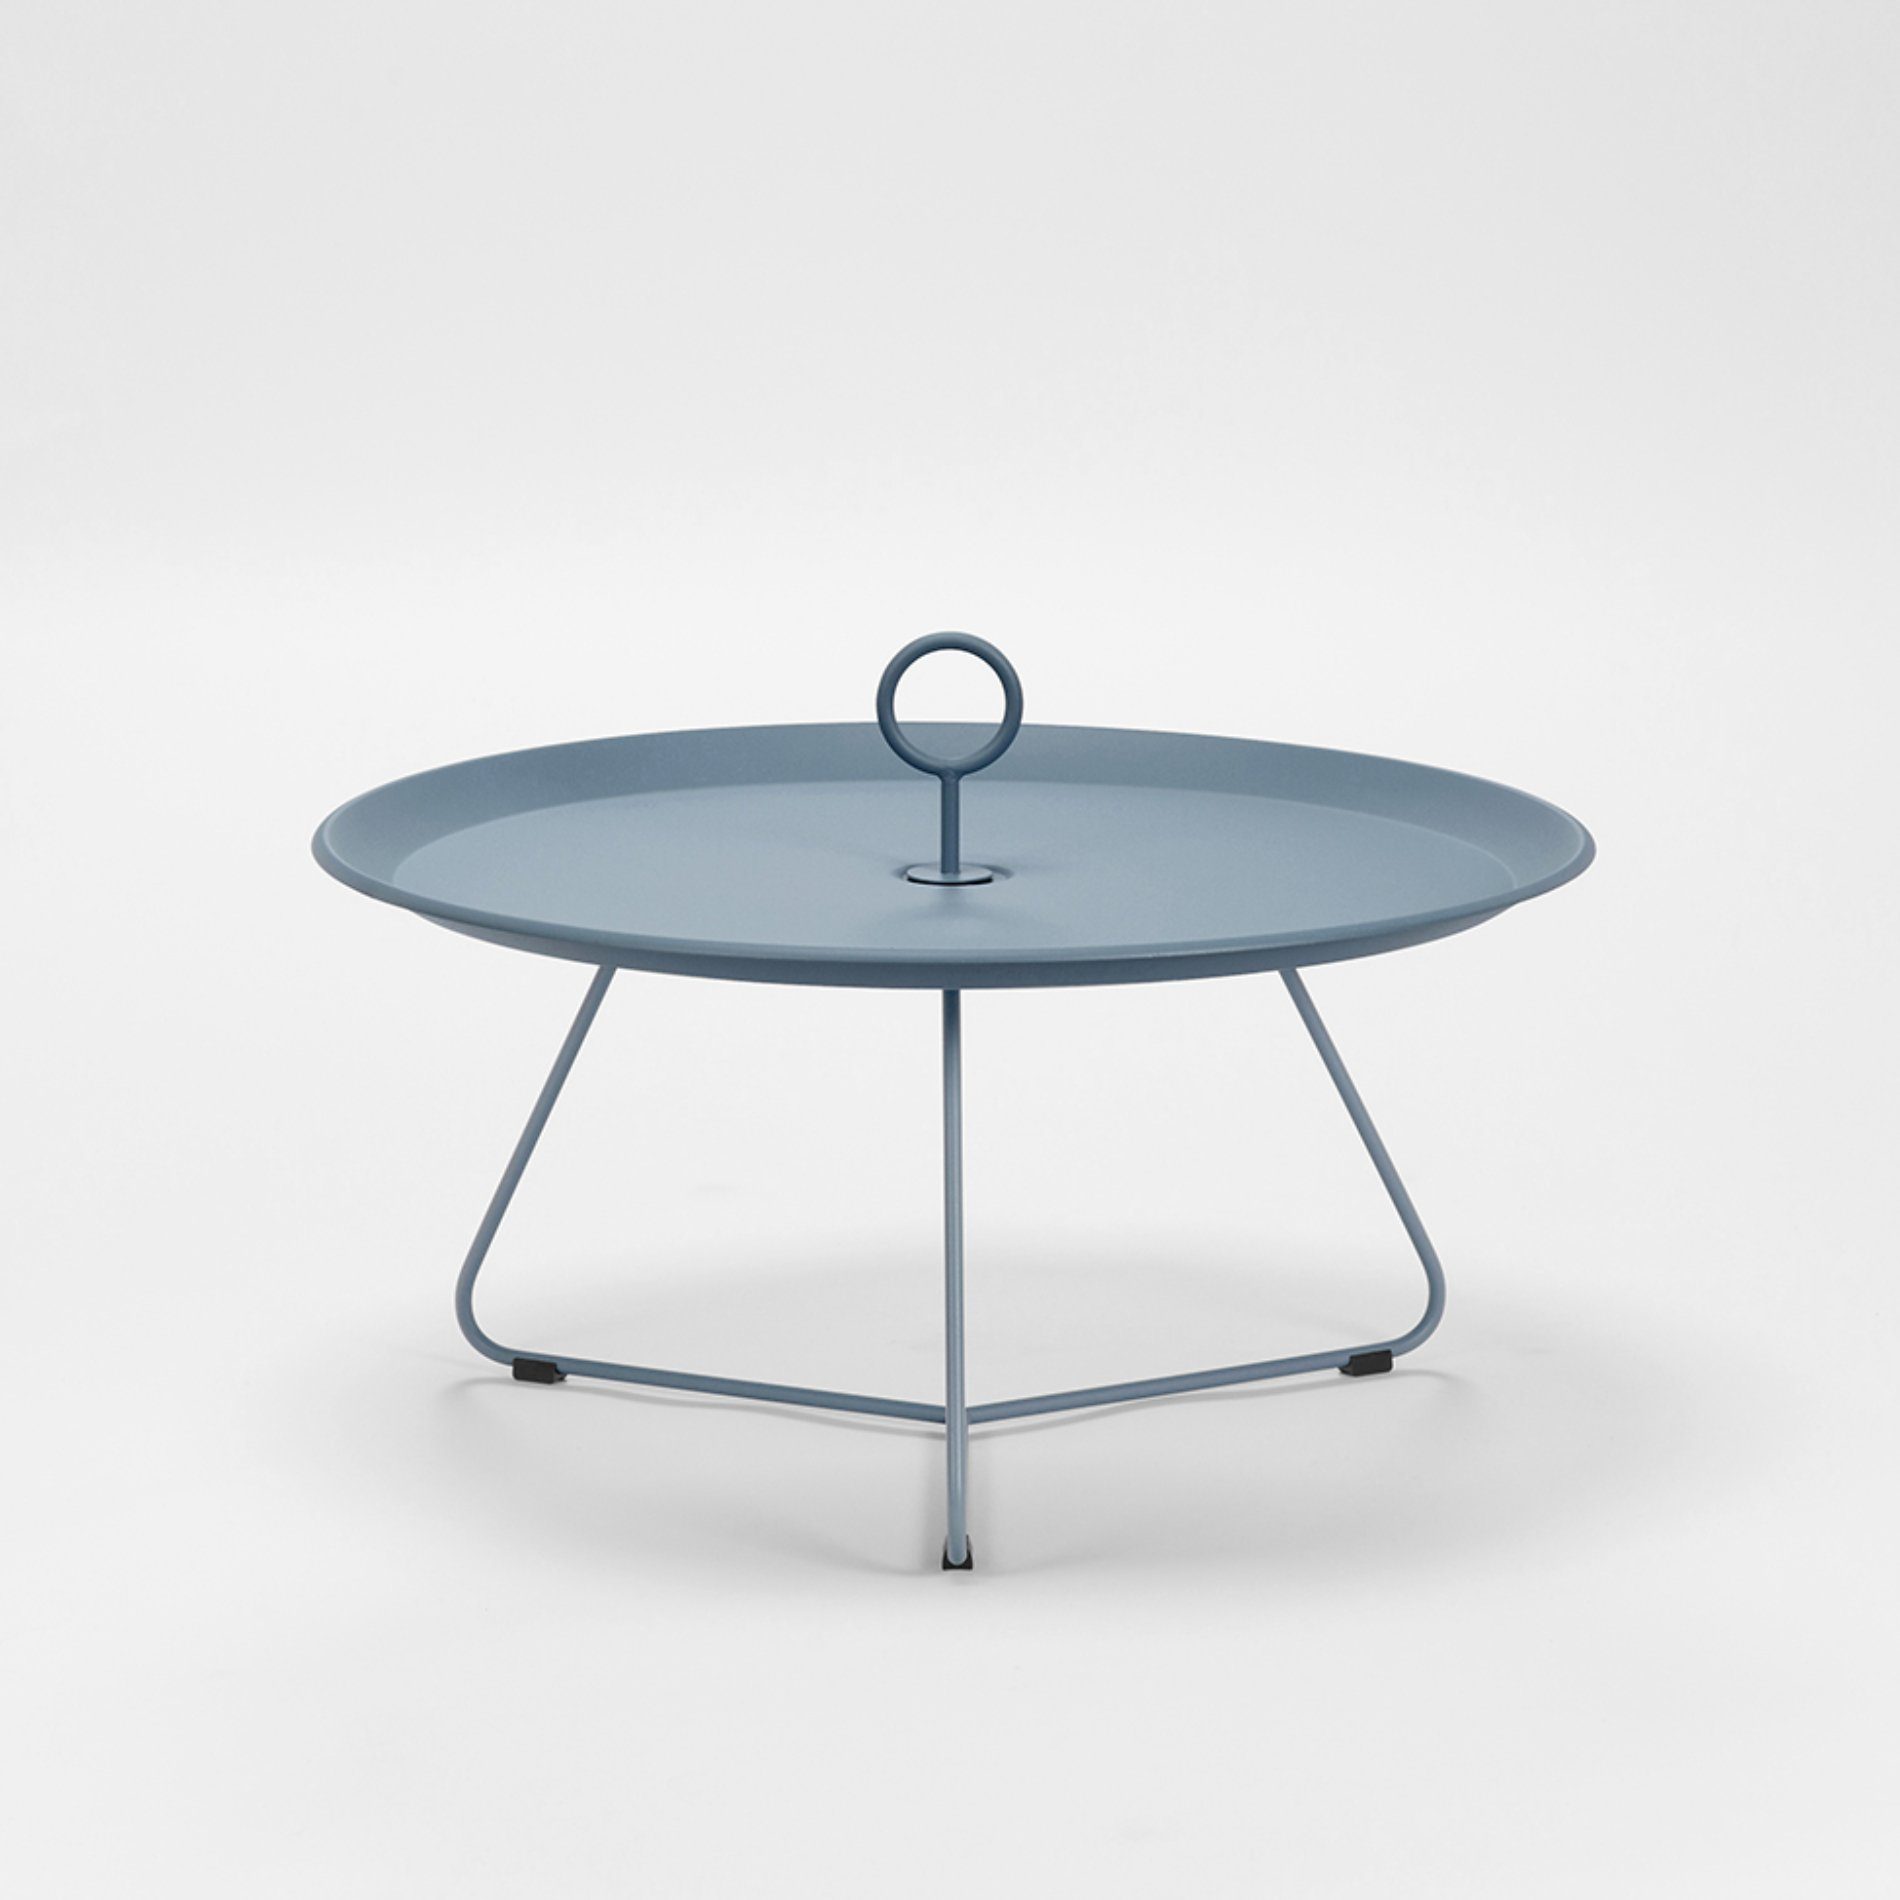 Tray Table "Eyelet" von Houe, Durchmesser 70 cm, midnight blue